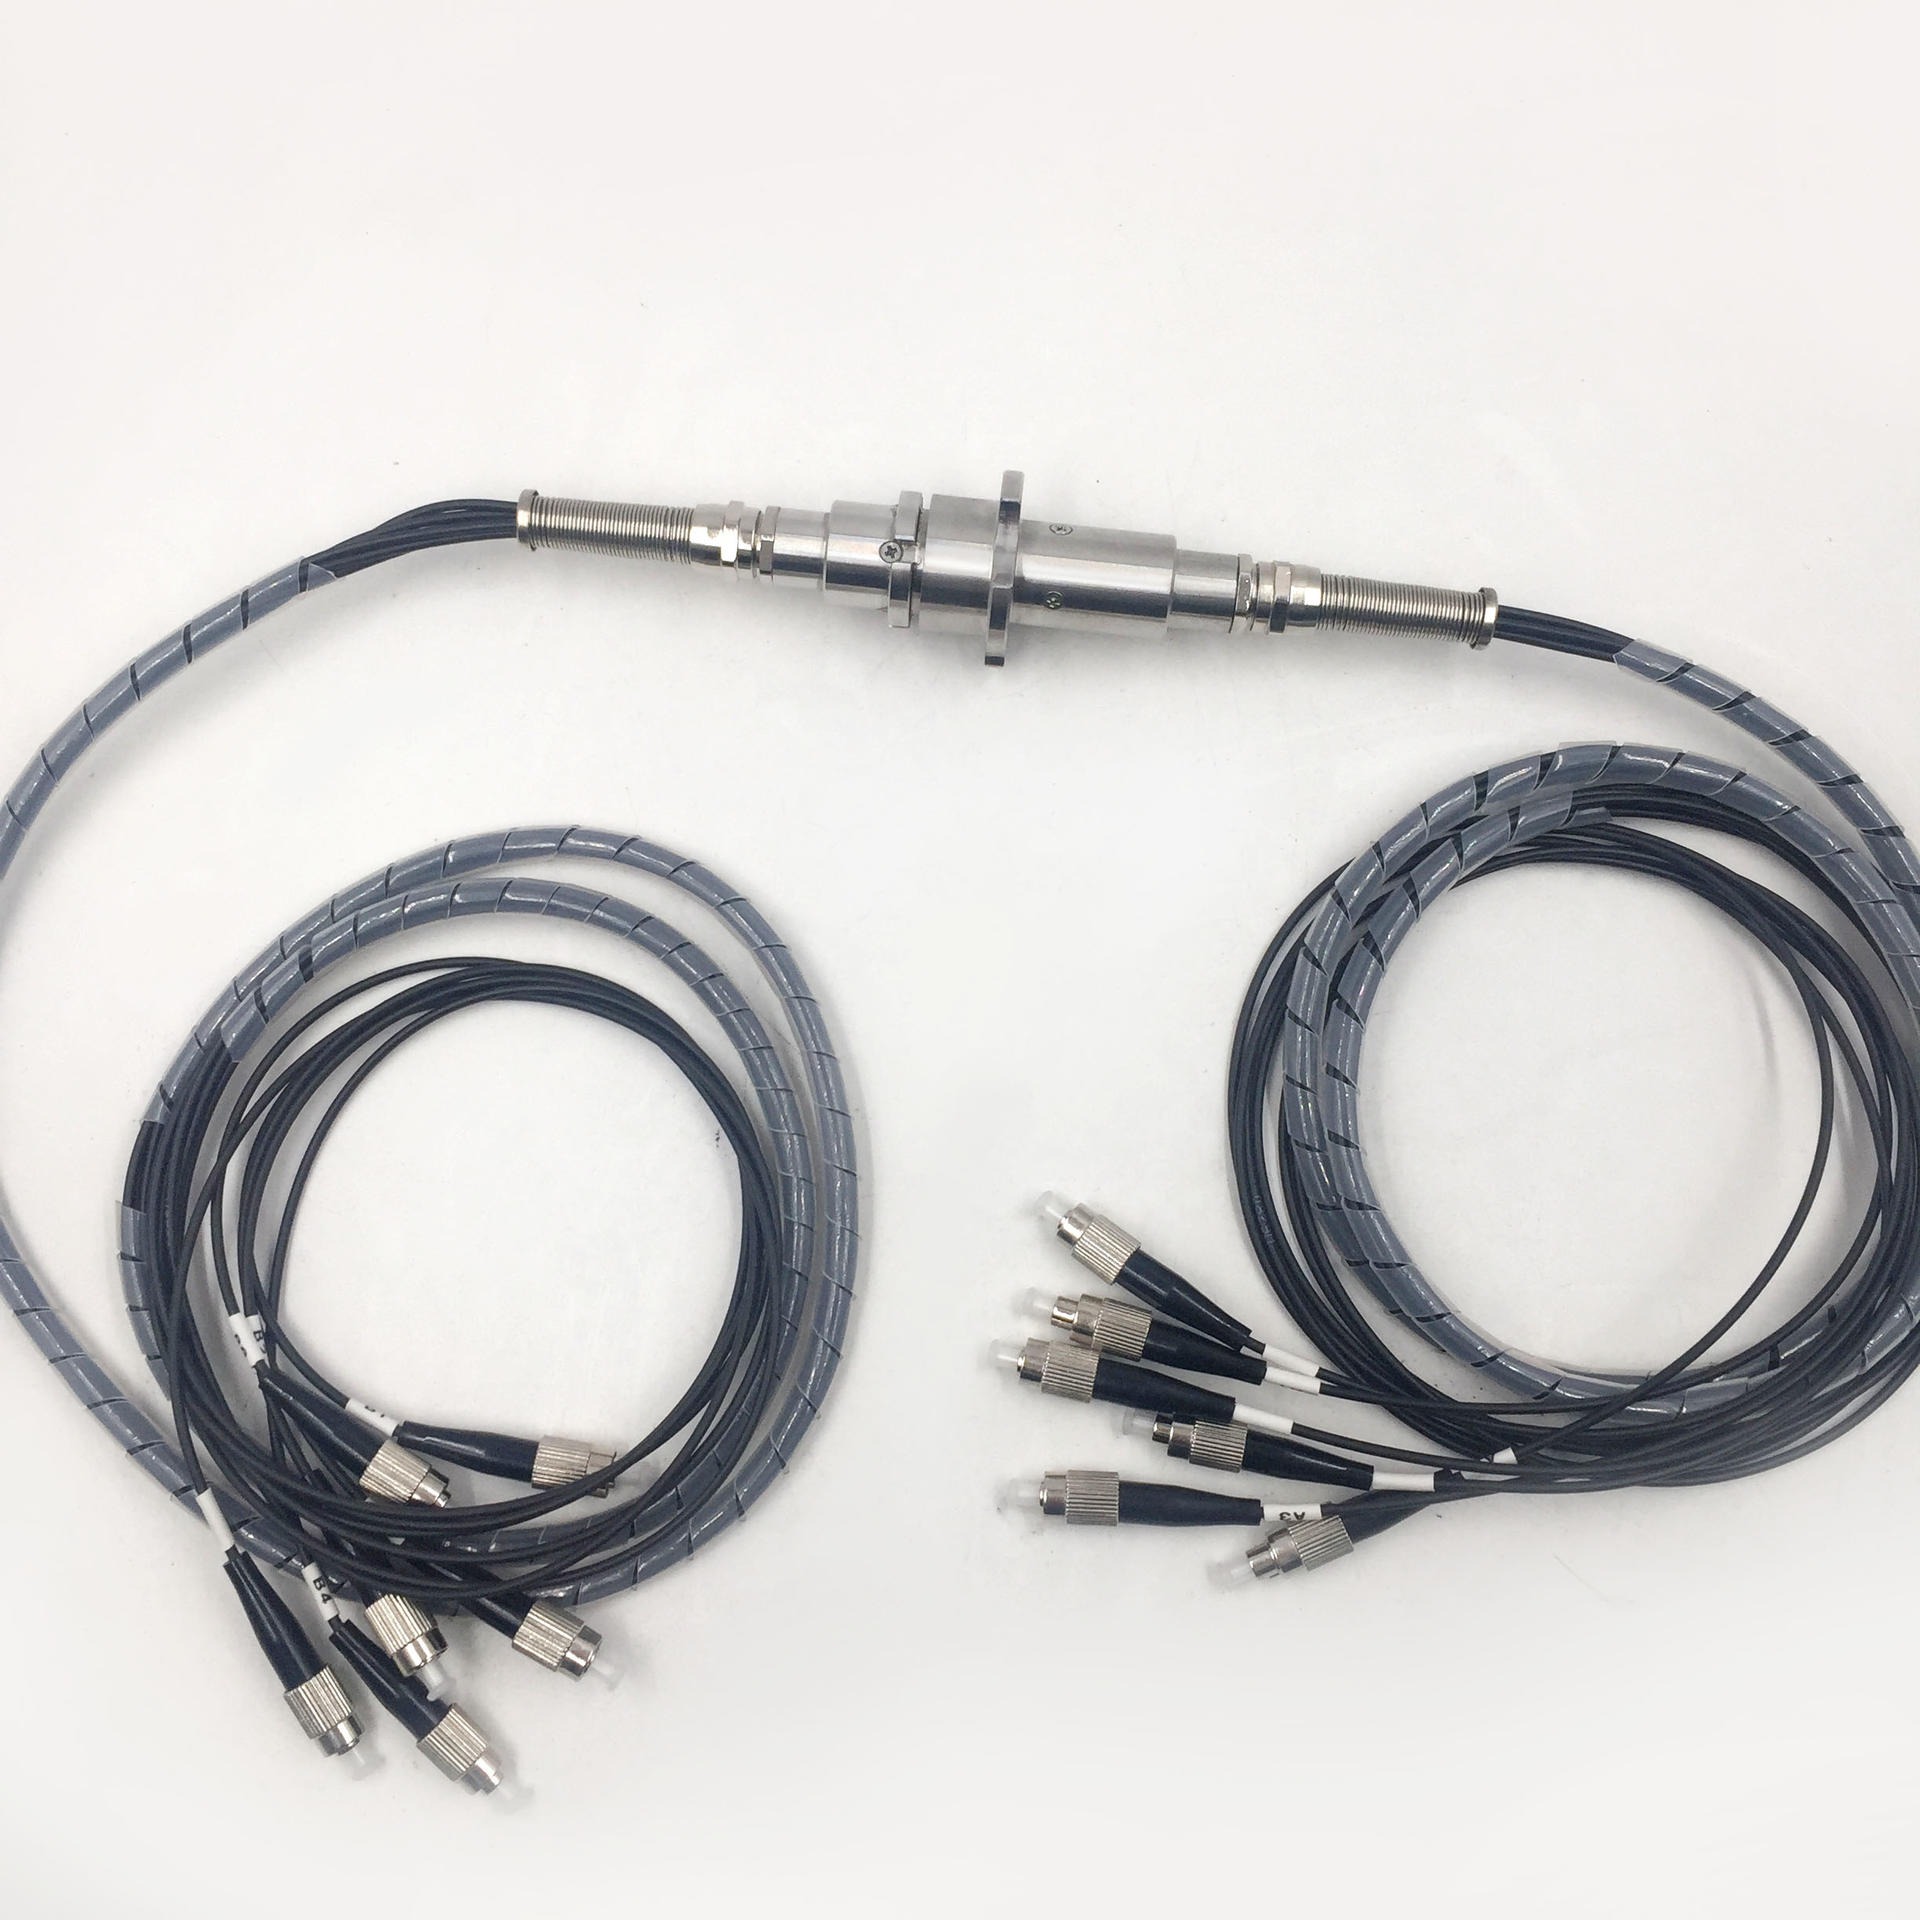 多通道微型光纤滑环，可包含2至7路相互独立的光纤通道，外径仅20mm，低插损，高隔离度